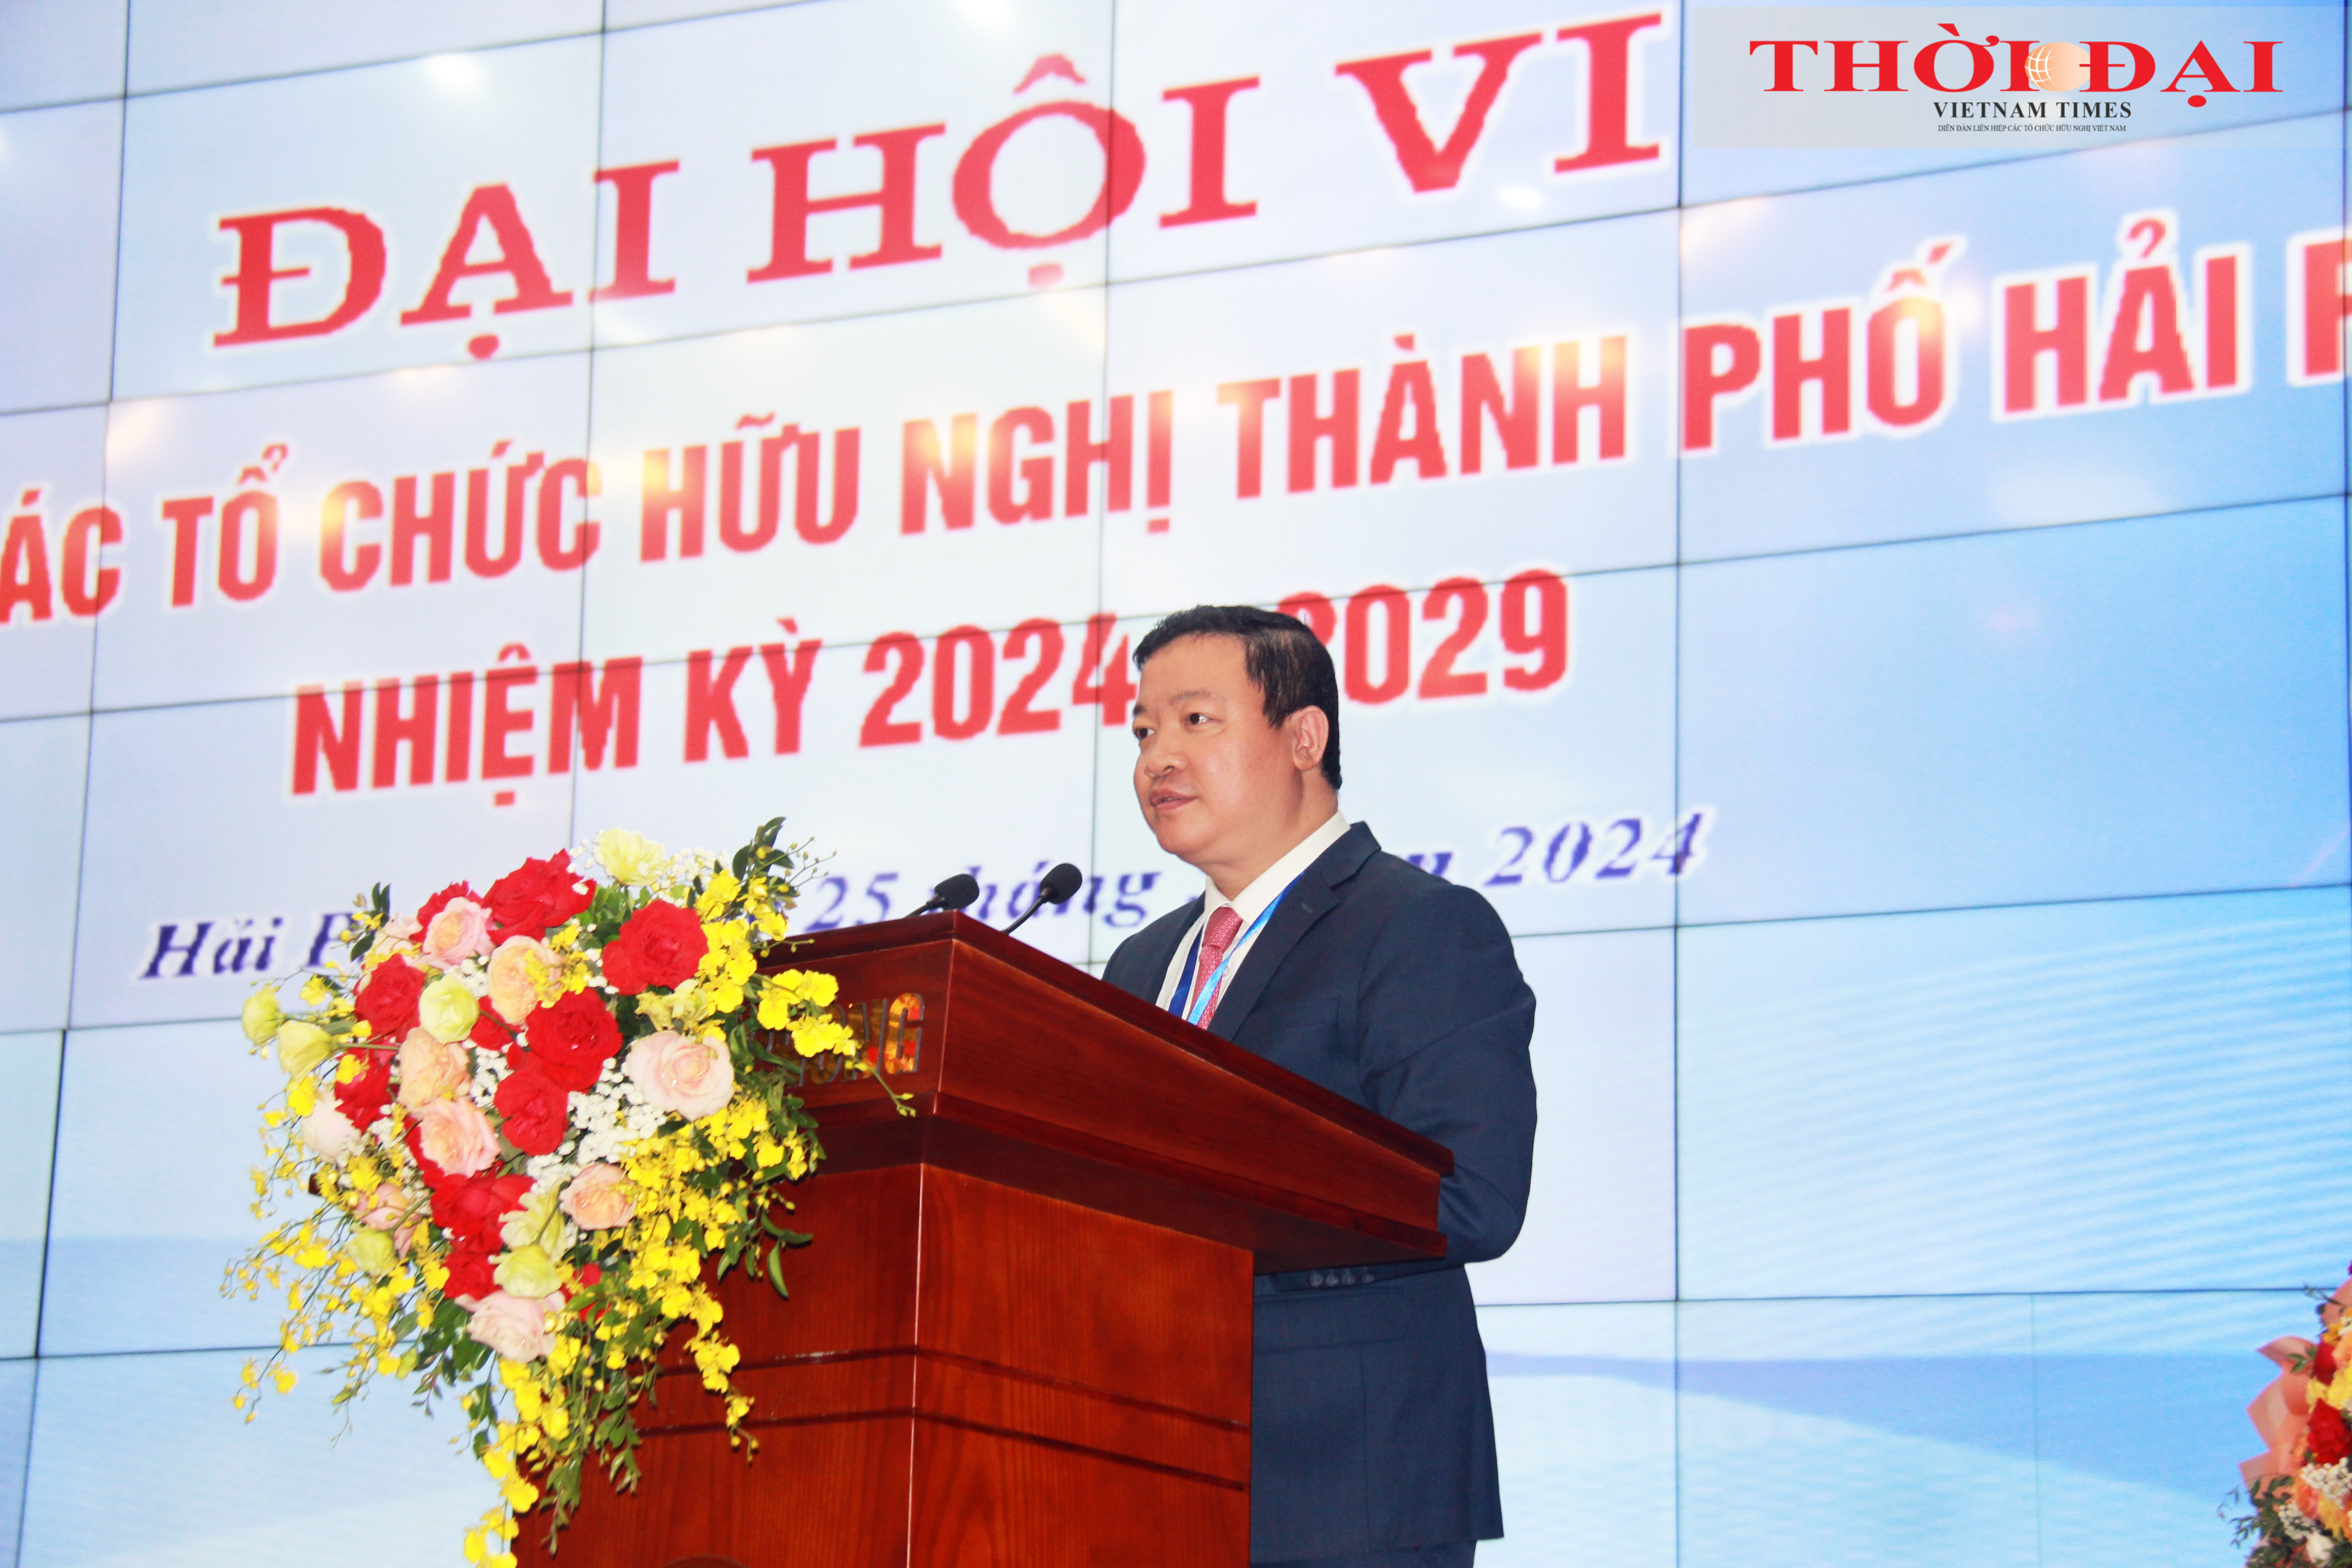 Ông Nguyễn Ngọc Hùng, Phó Chủ tịch Liên hiệp các tổ chức hữu nghị Việt Nam phát biểu tại Đại hội.